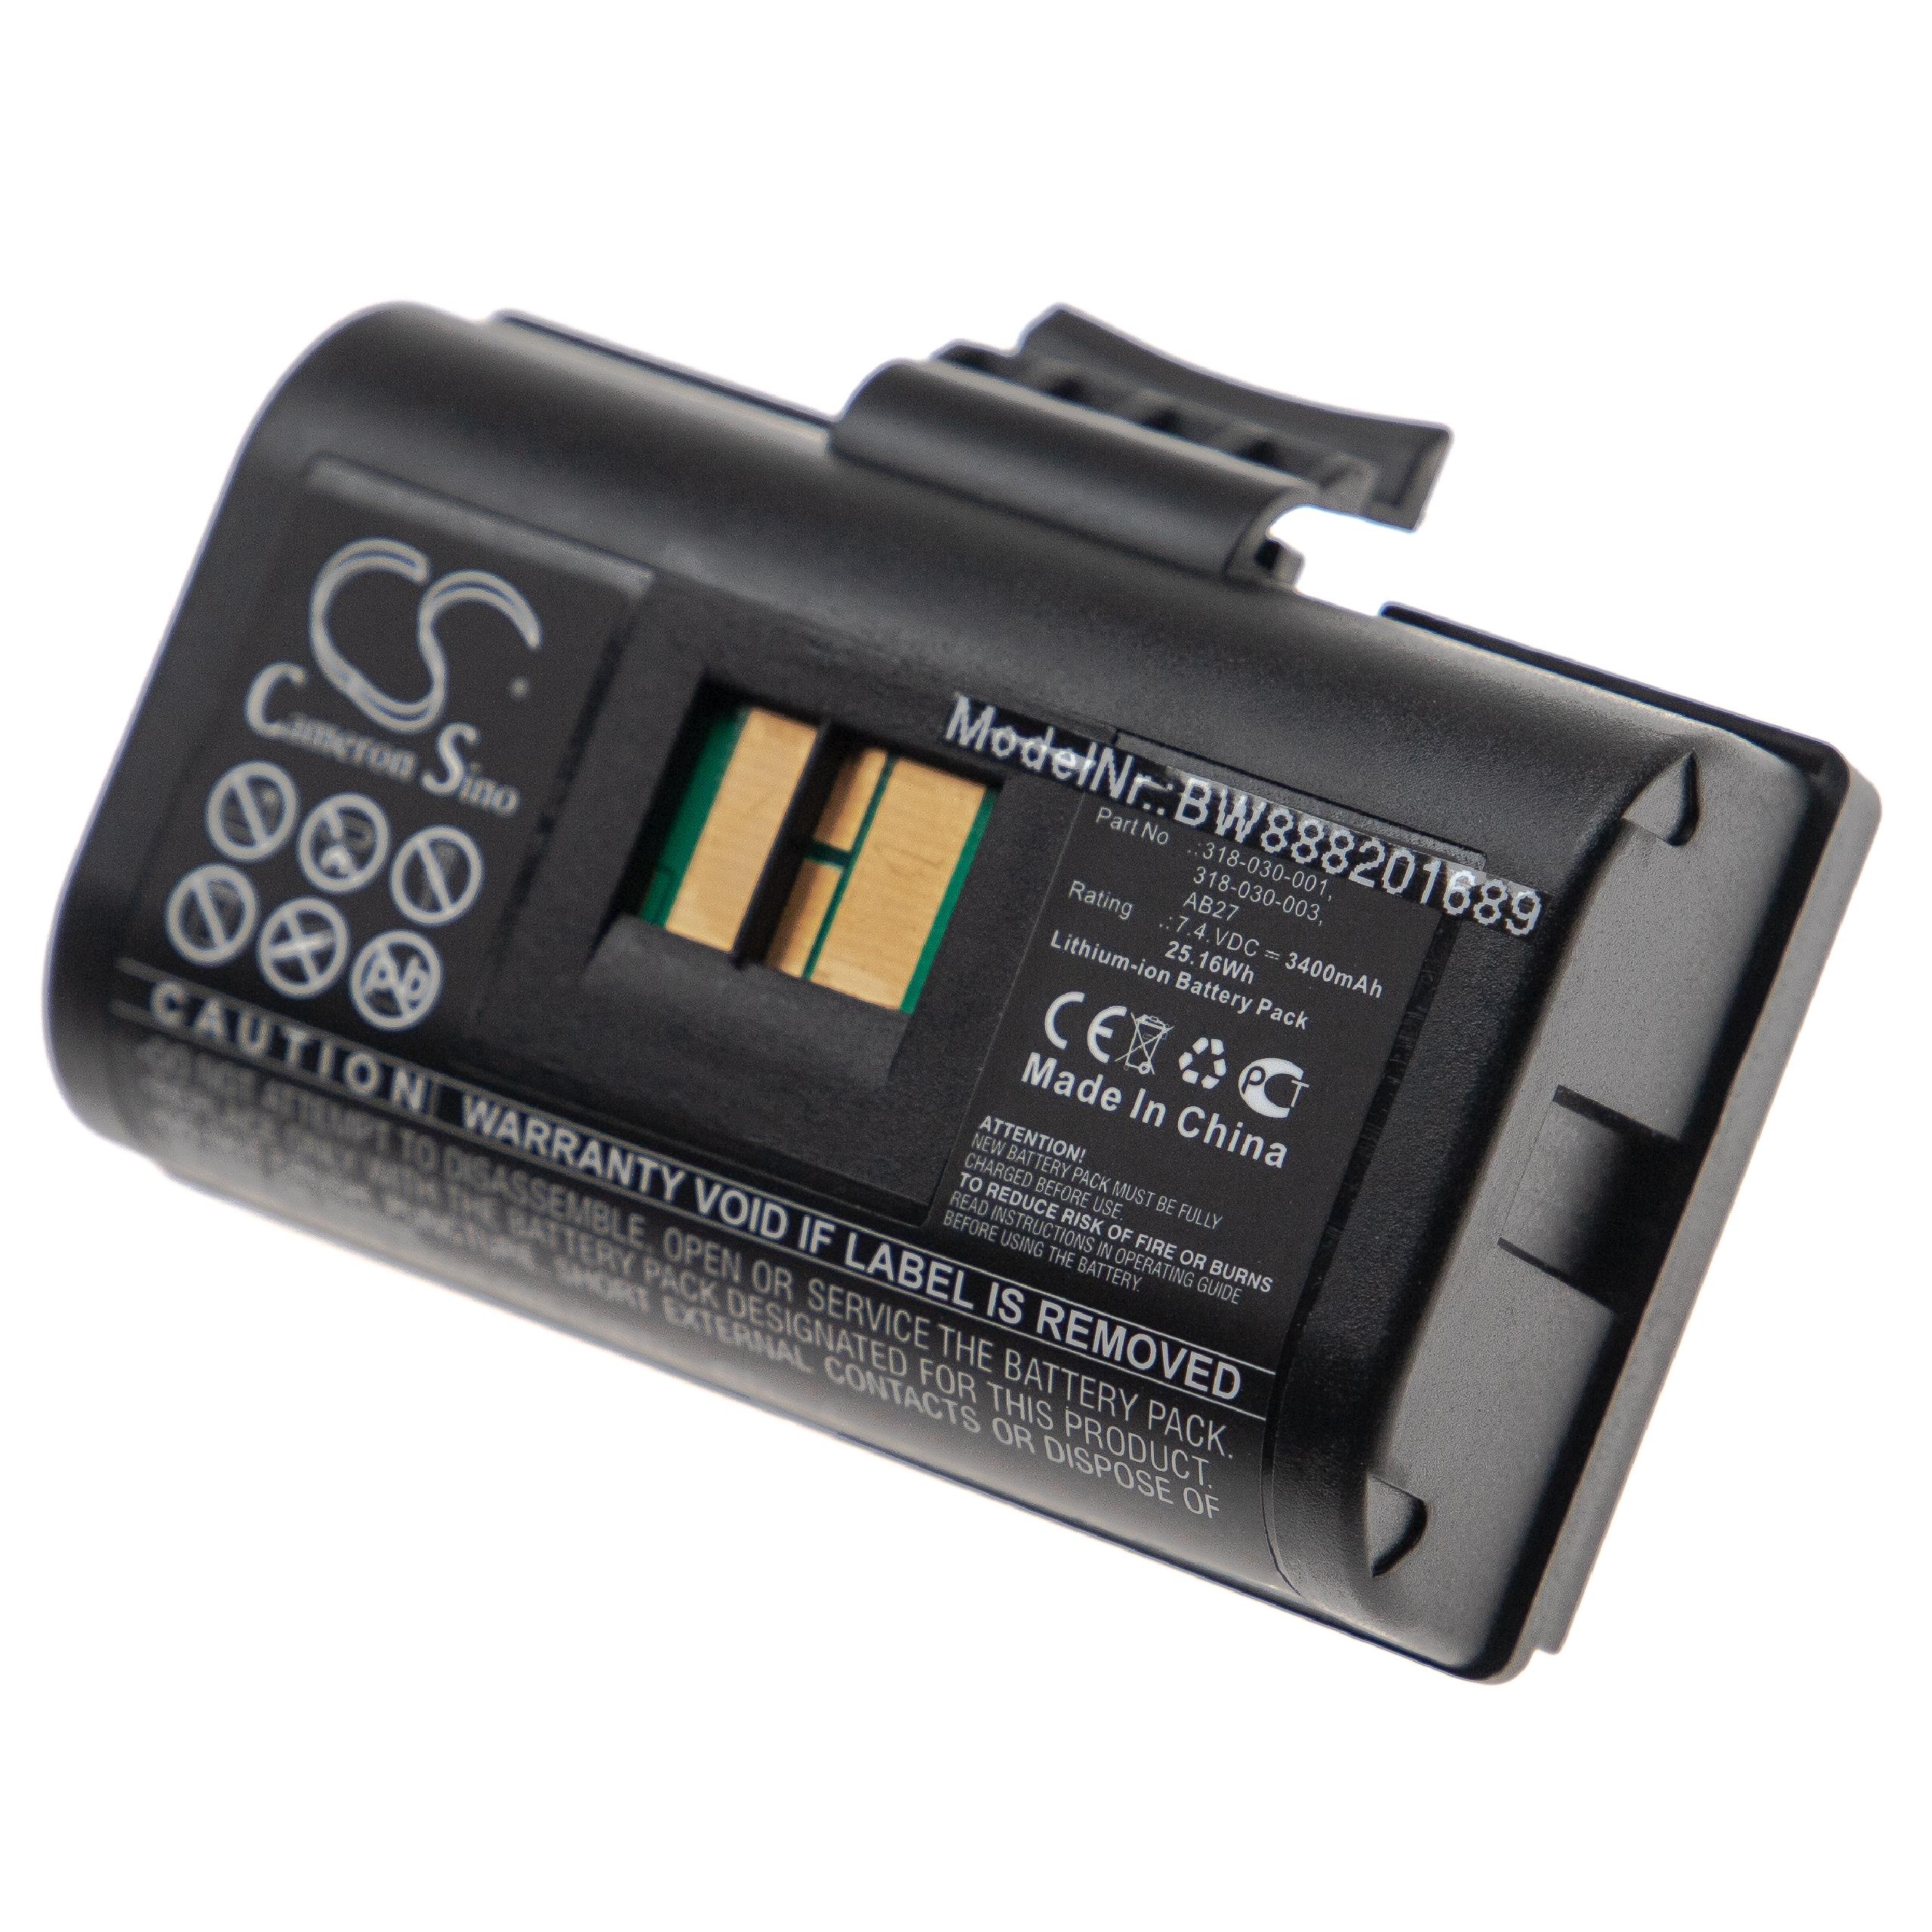 Batterie remplace Intermec 318-030-001, 318-030-003, AB27 pour imprimante - 3400mAh 7,4V Li-ion